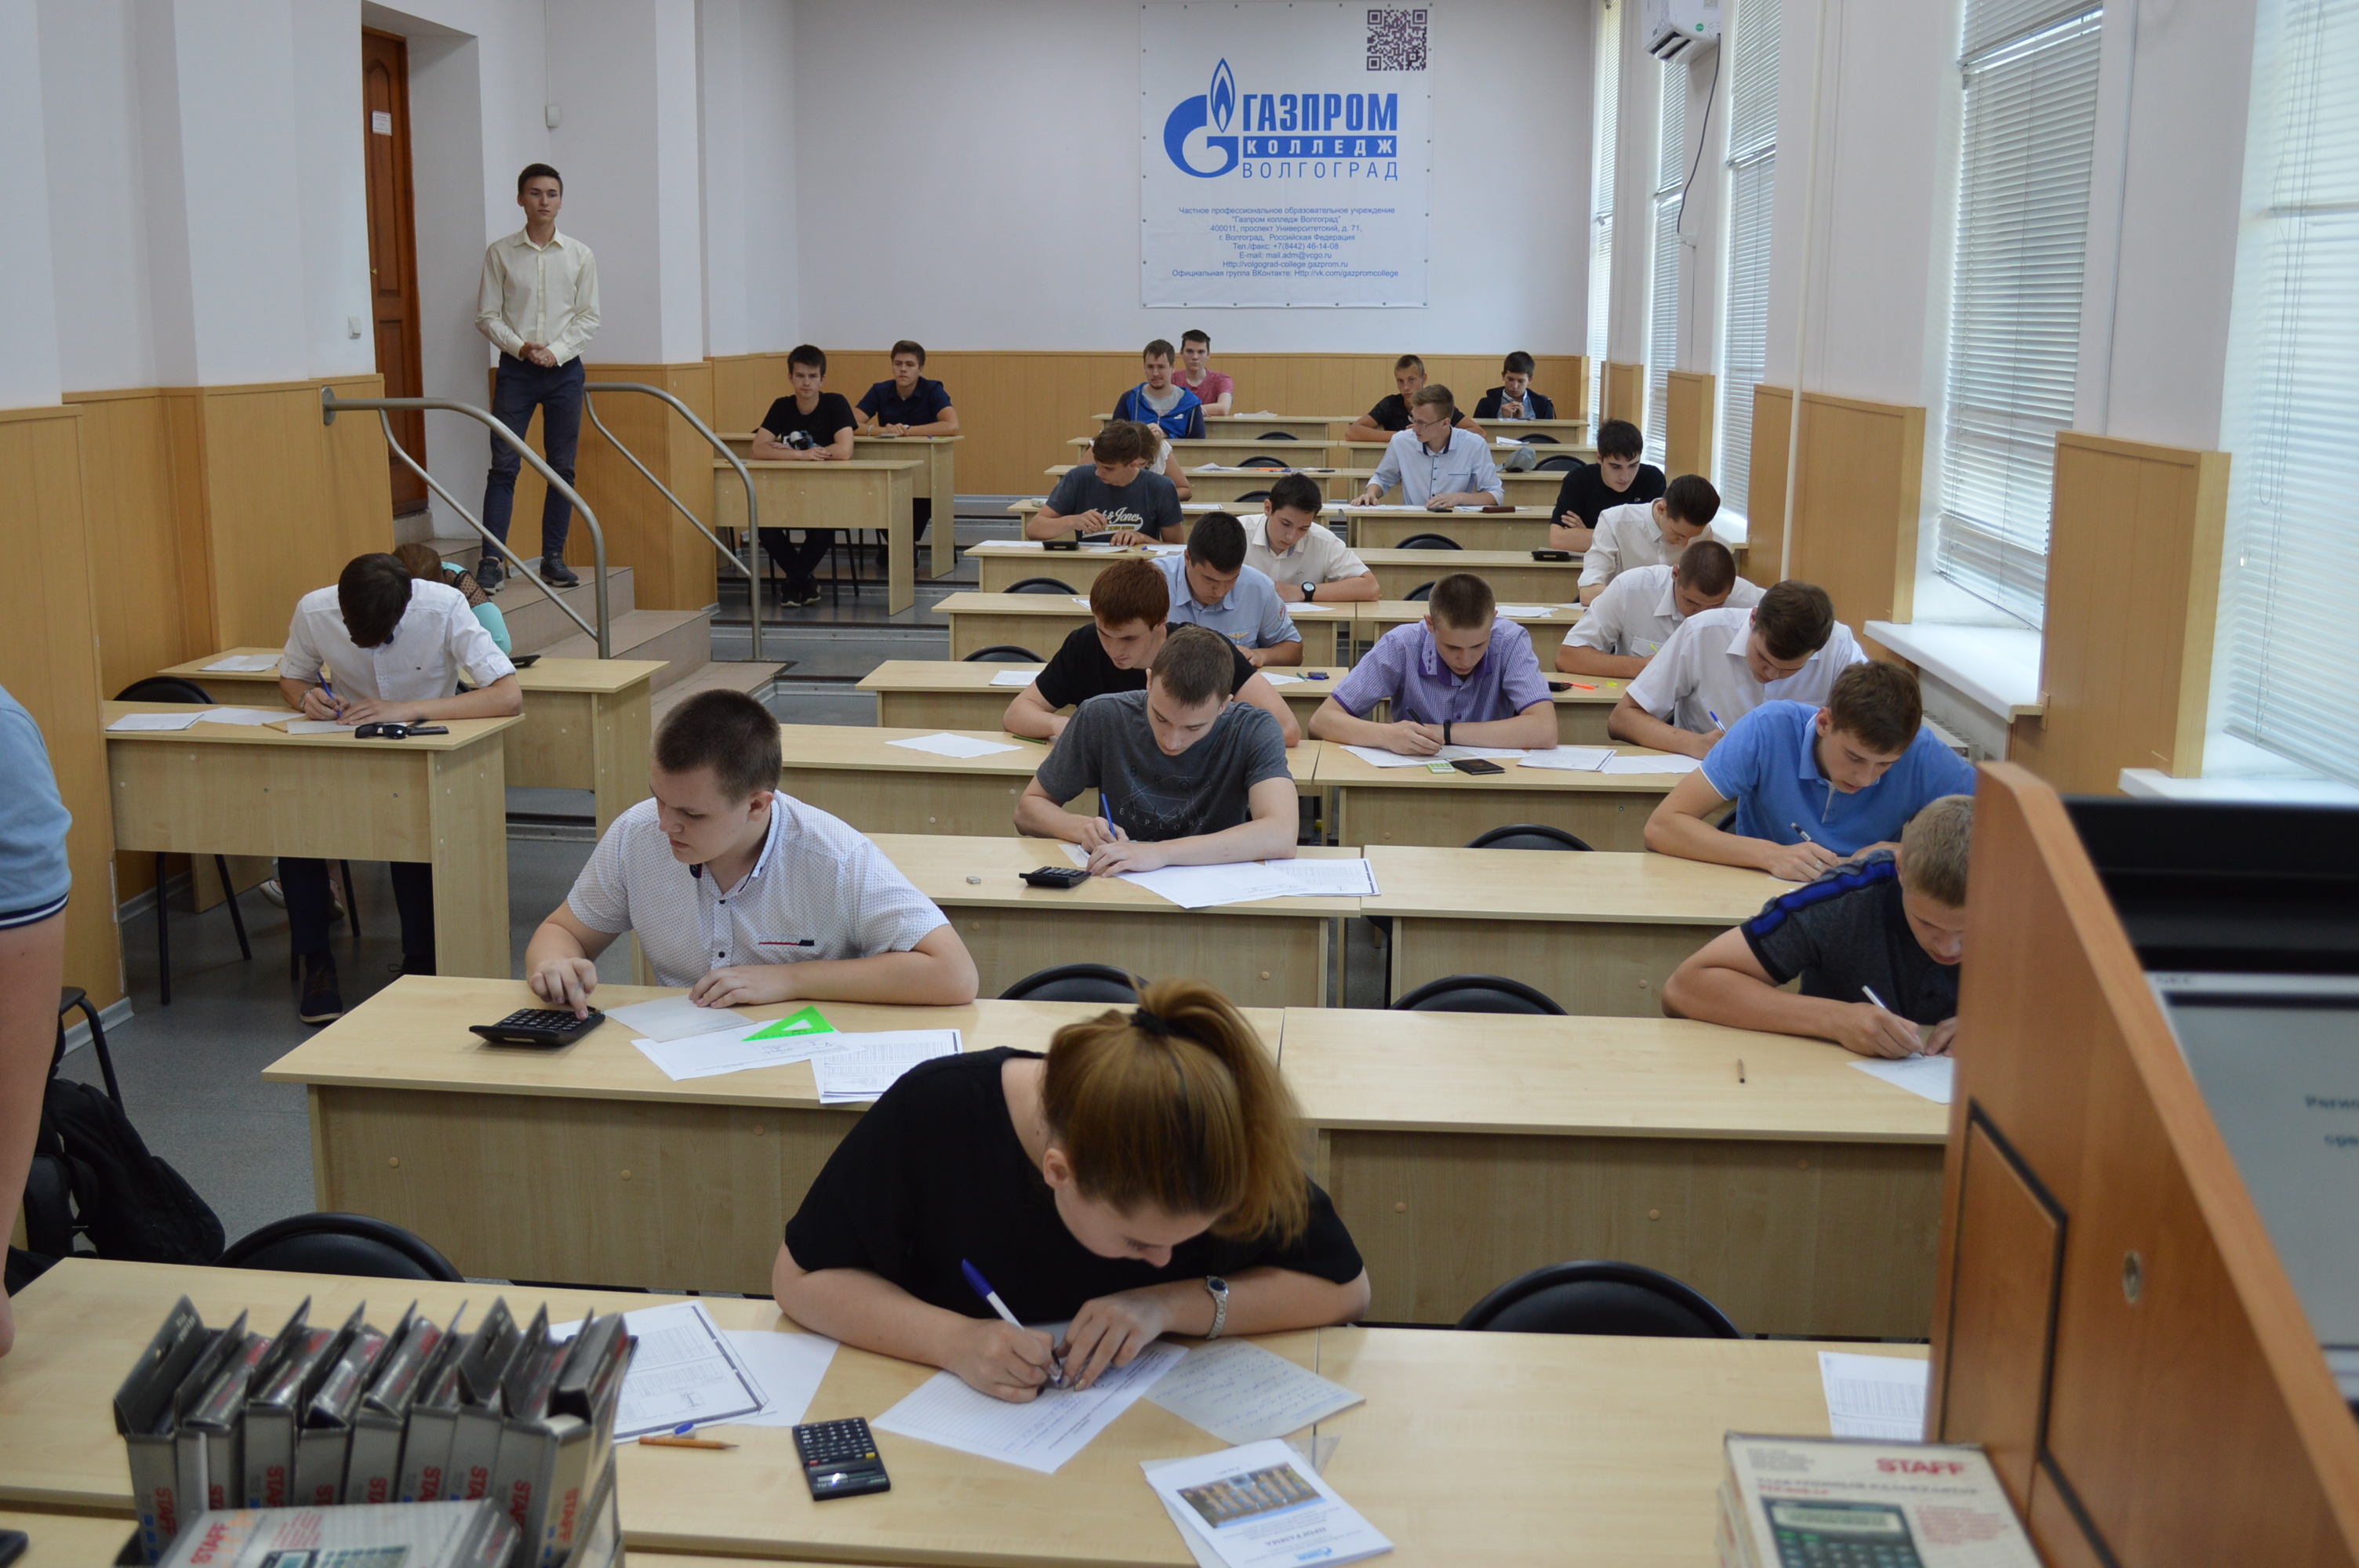 Студенты второго курса Волгоградского энергетического колледжа стали победителями региональной олимпиады по Технической механике